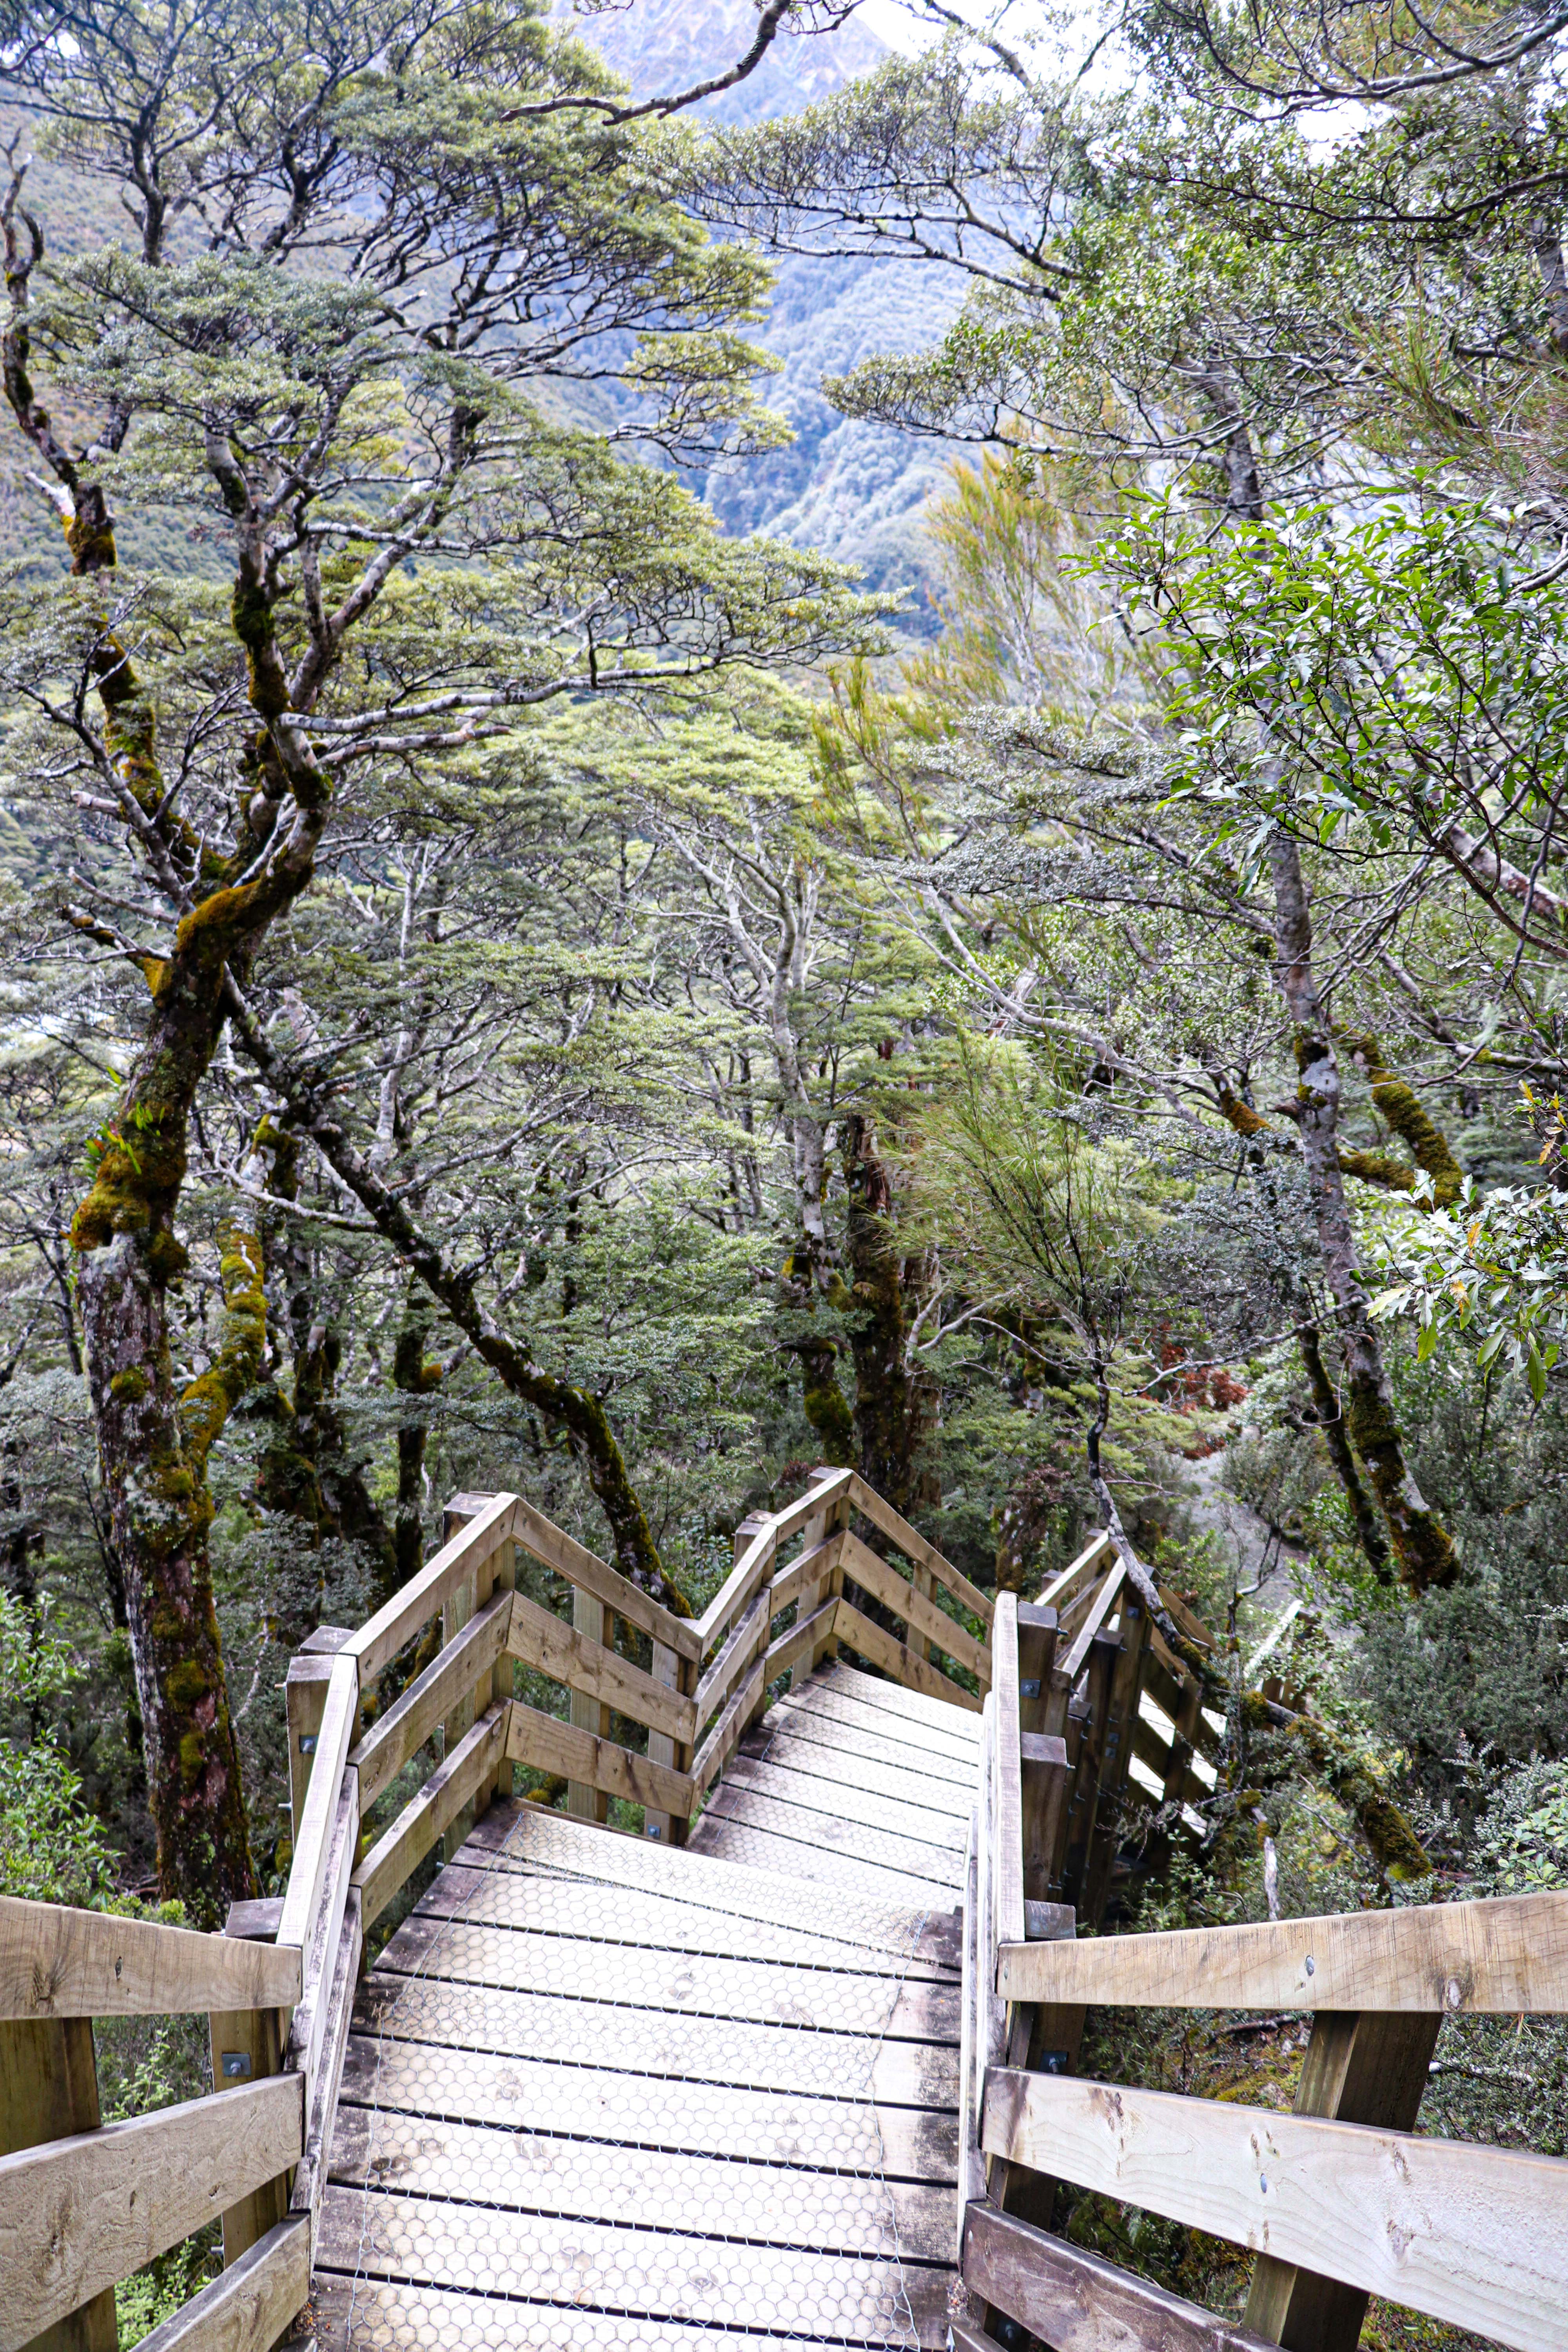 NZ steps Arturs Pass 2